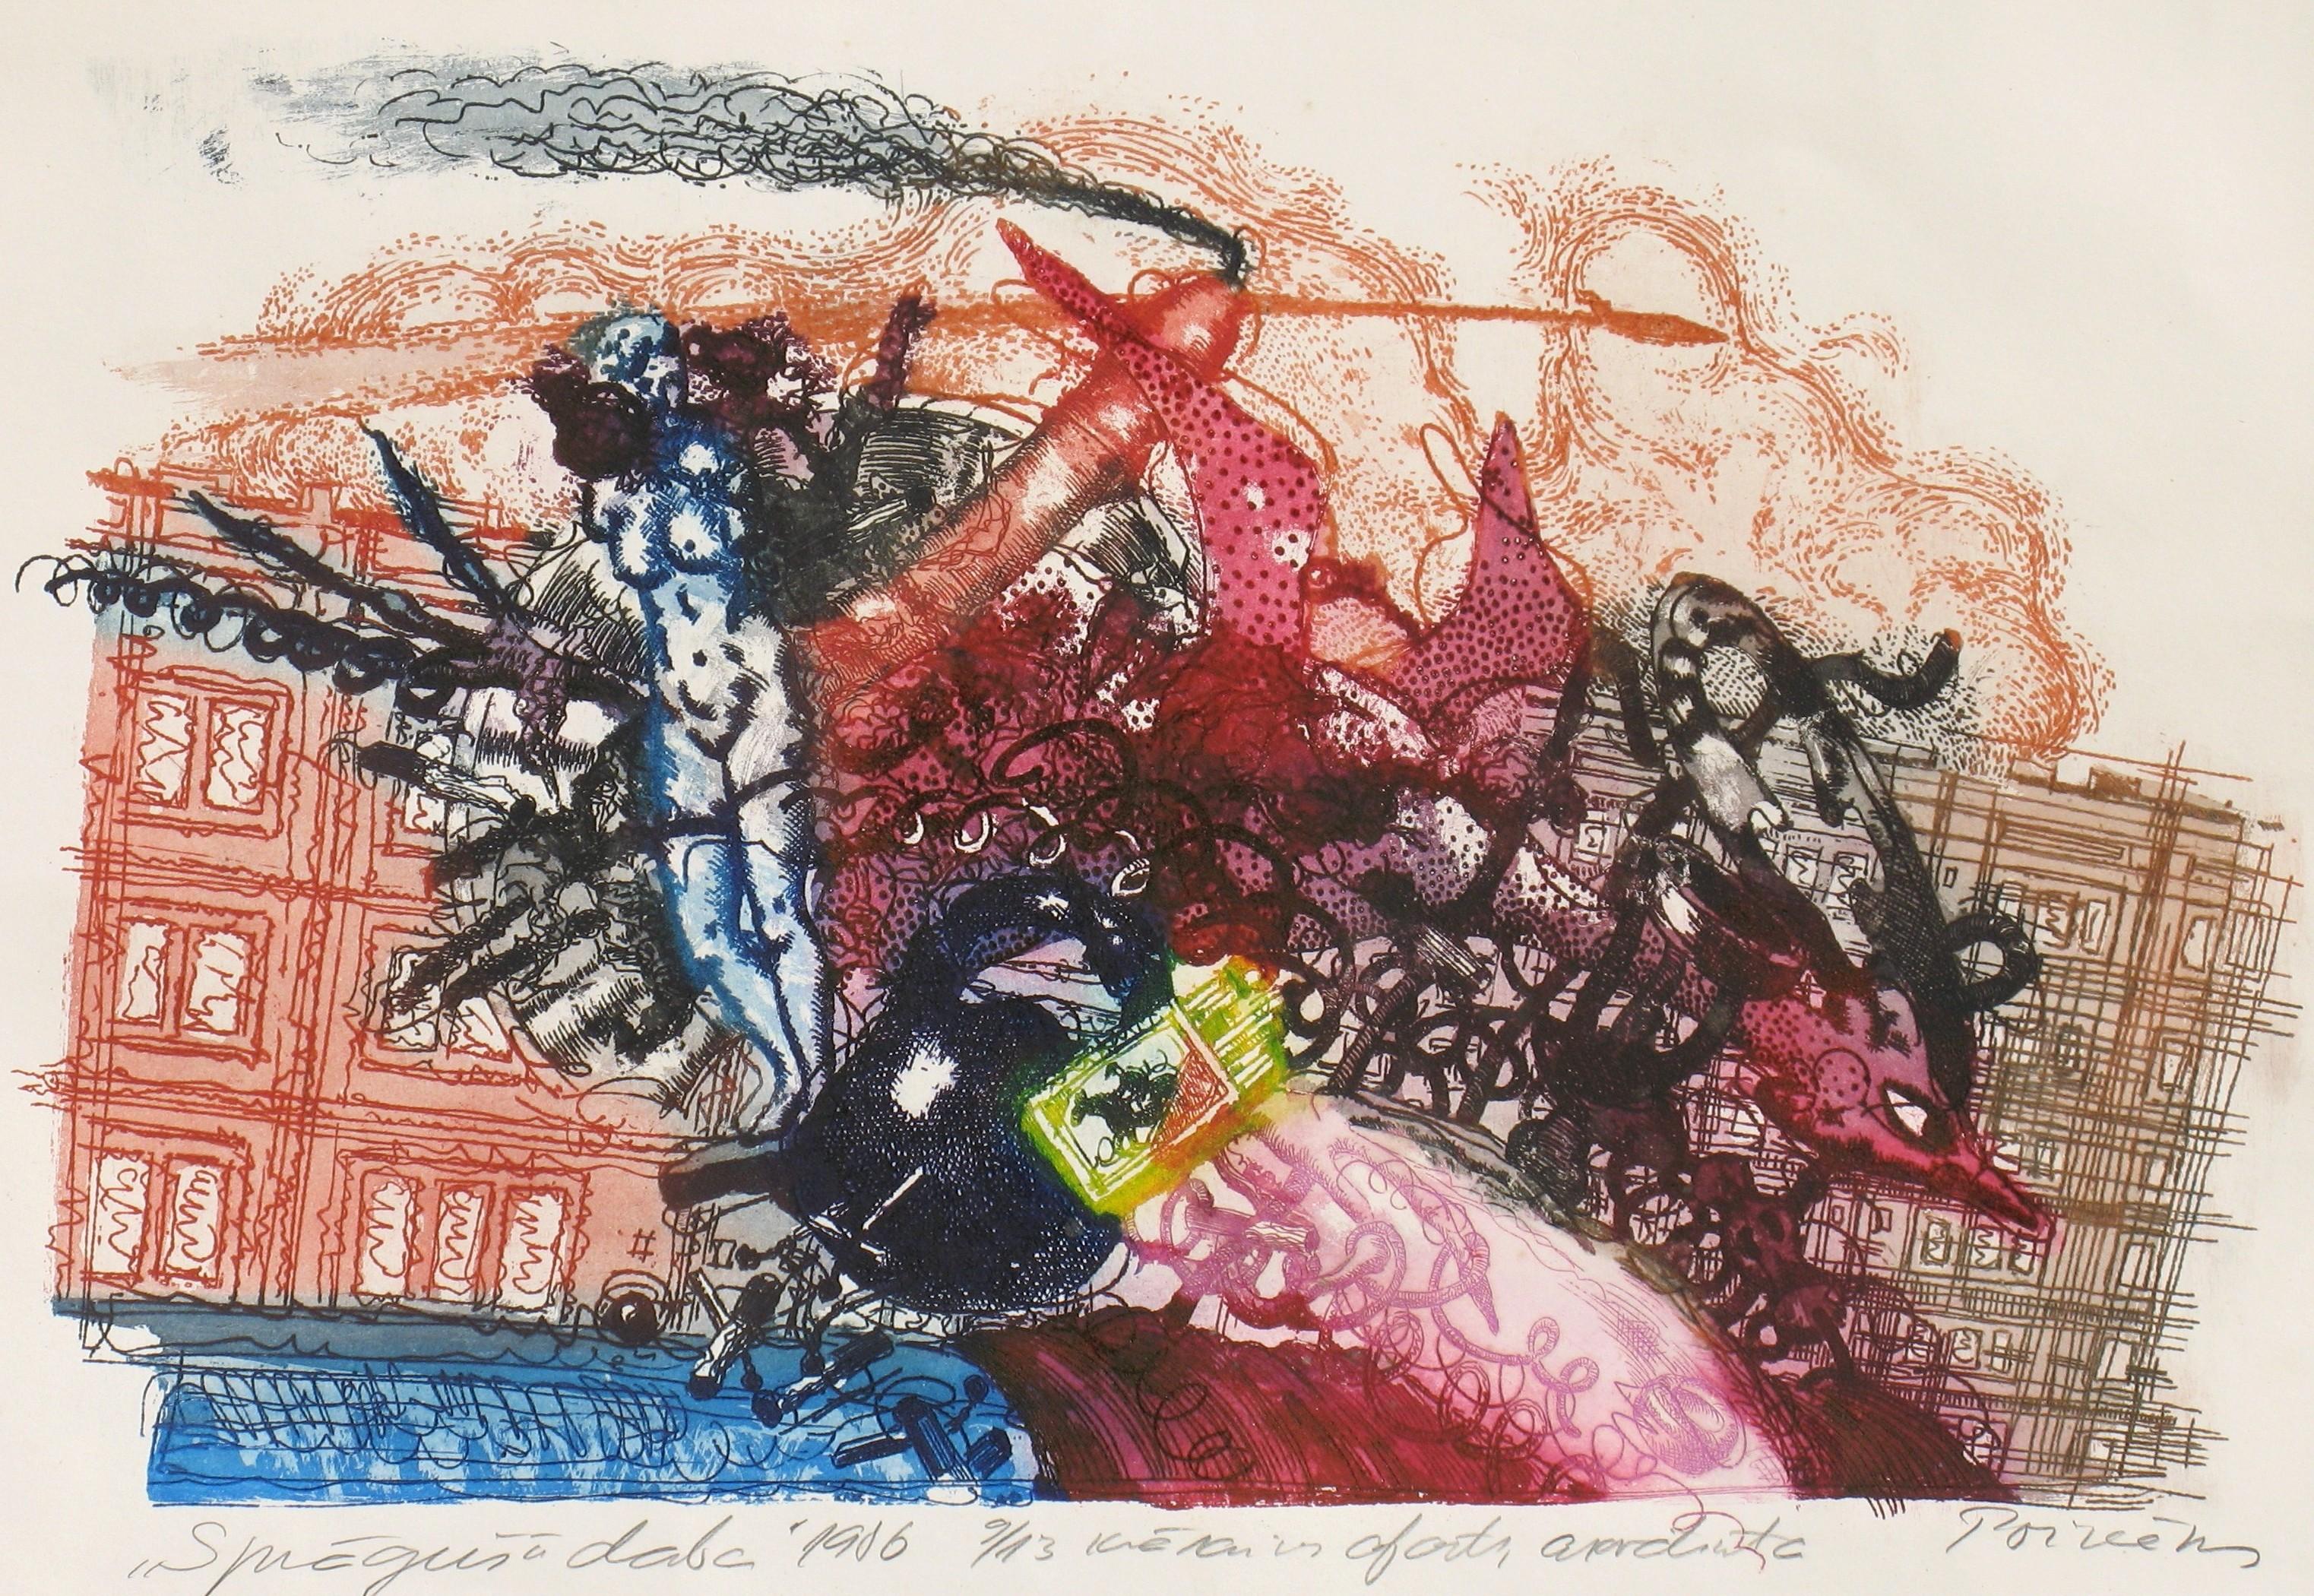 Still-Life Print Ivars Poikans - La nature explose  * 1986. Aquatinte, eau-forte sur papier 9/13. 41x58 cm